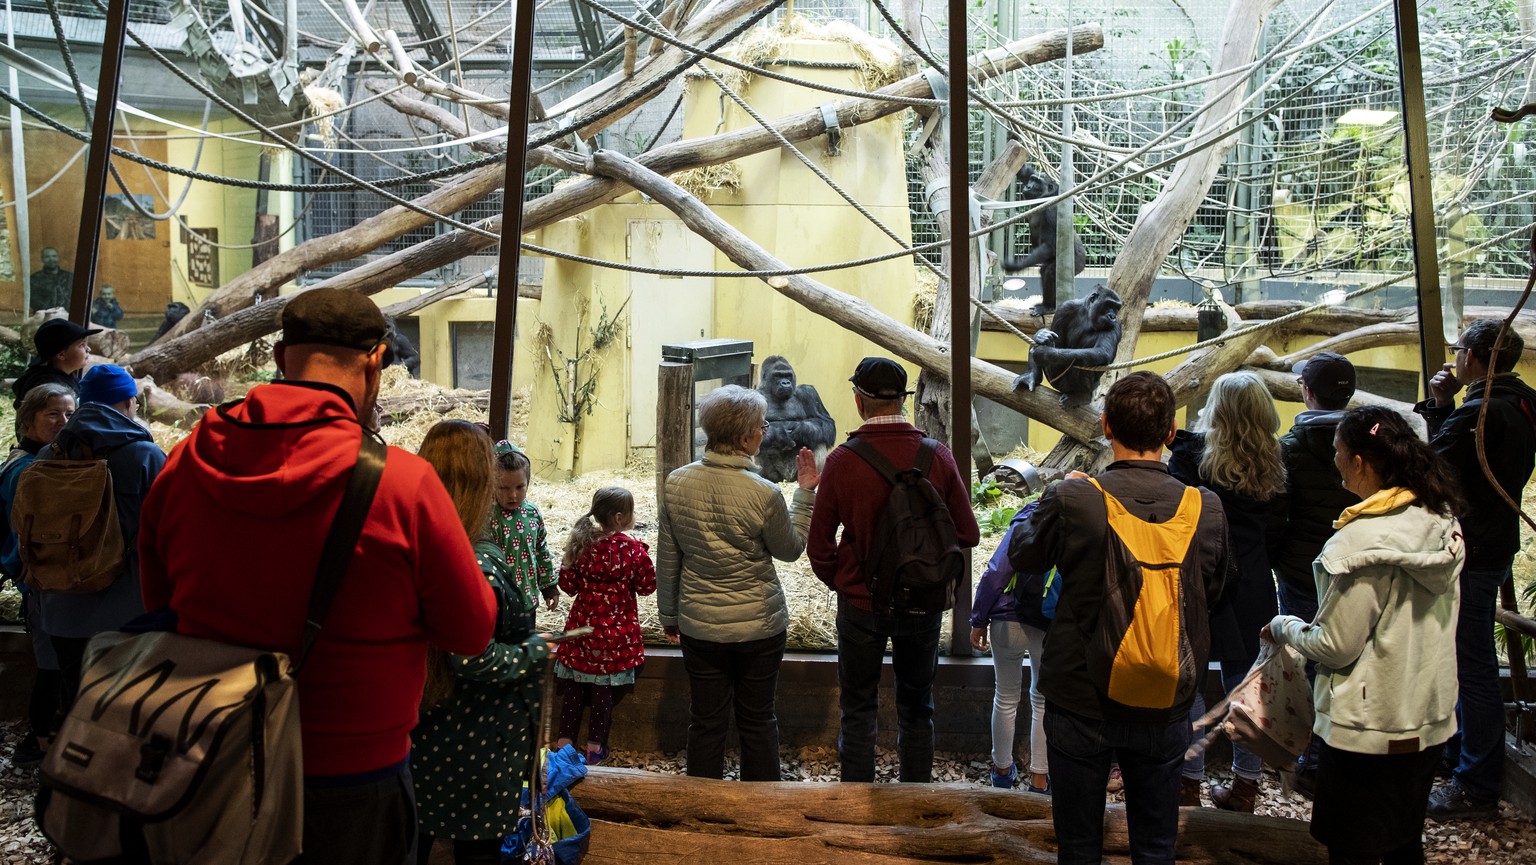 Menschen beobachten die Gorillas im Zoo Zuerich am Samstag, 6. Juni 2020. Der Zoo Zuerich ist ab heute wieder geoeffnet. (KEYSTONE/Alexandra Wey)